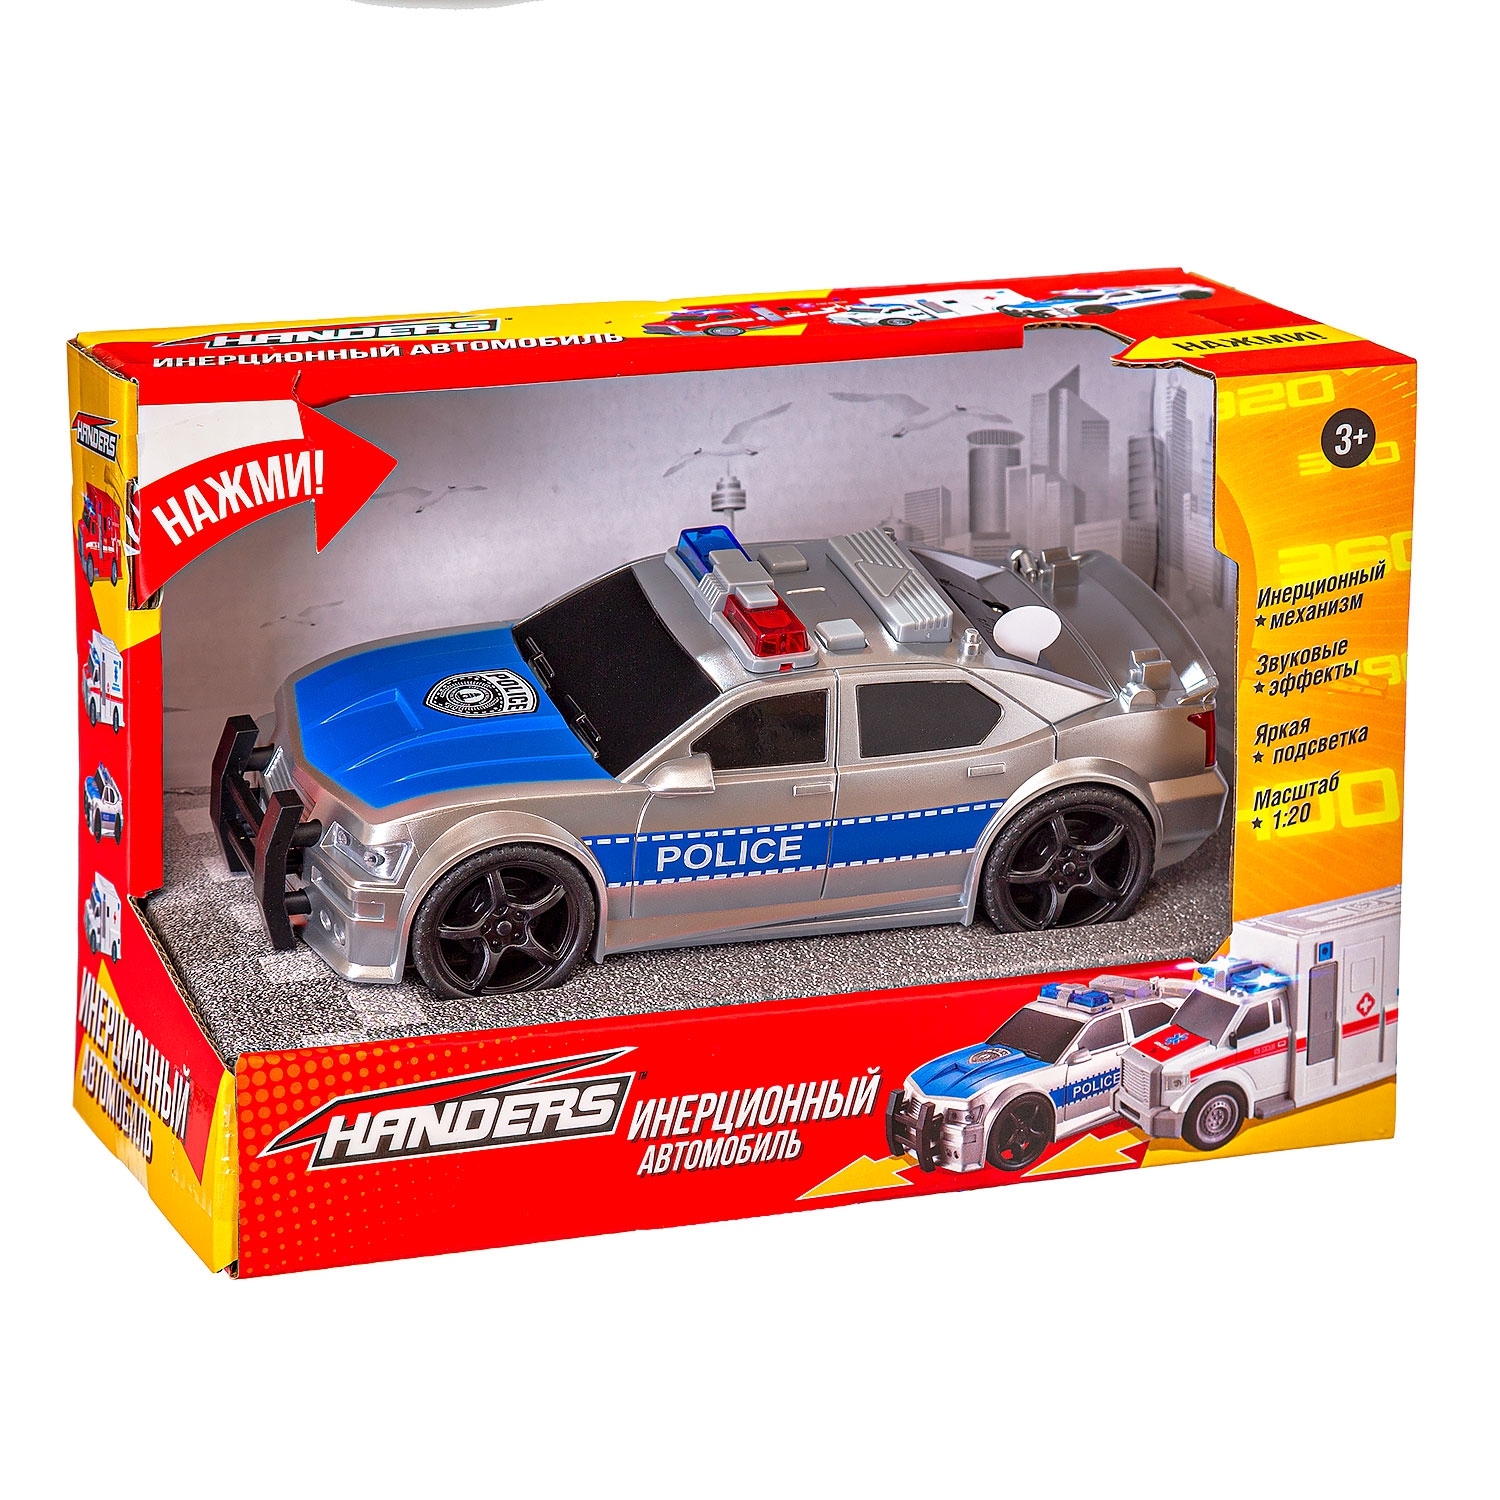 Инерционная игрушка Handers Полицейский автомобиль (18,5 см, 1:20, свет, звук) (Вид 1)